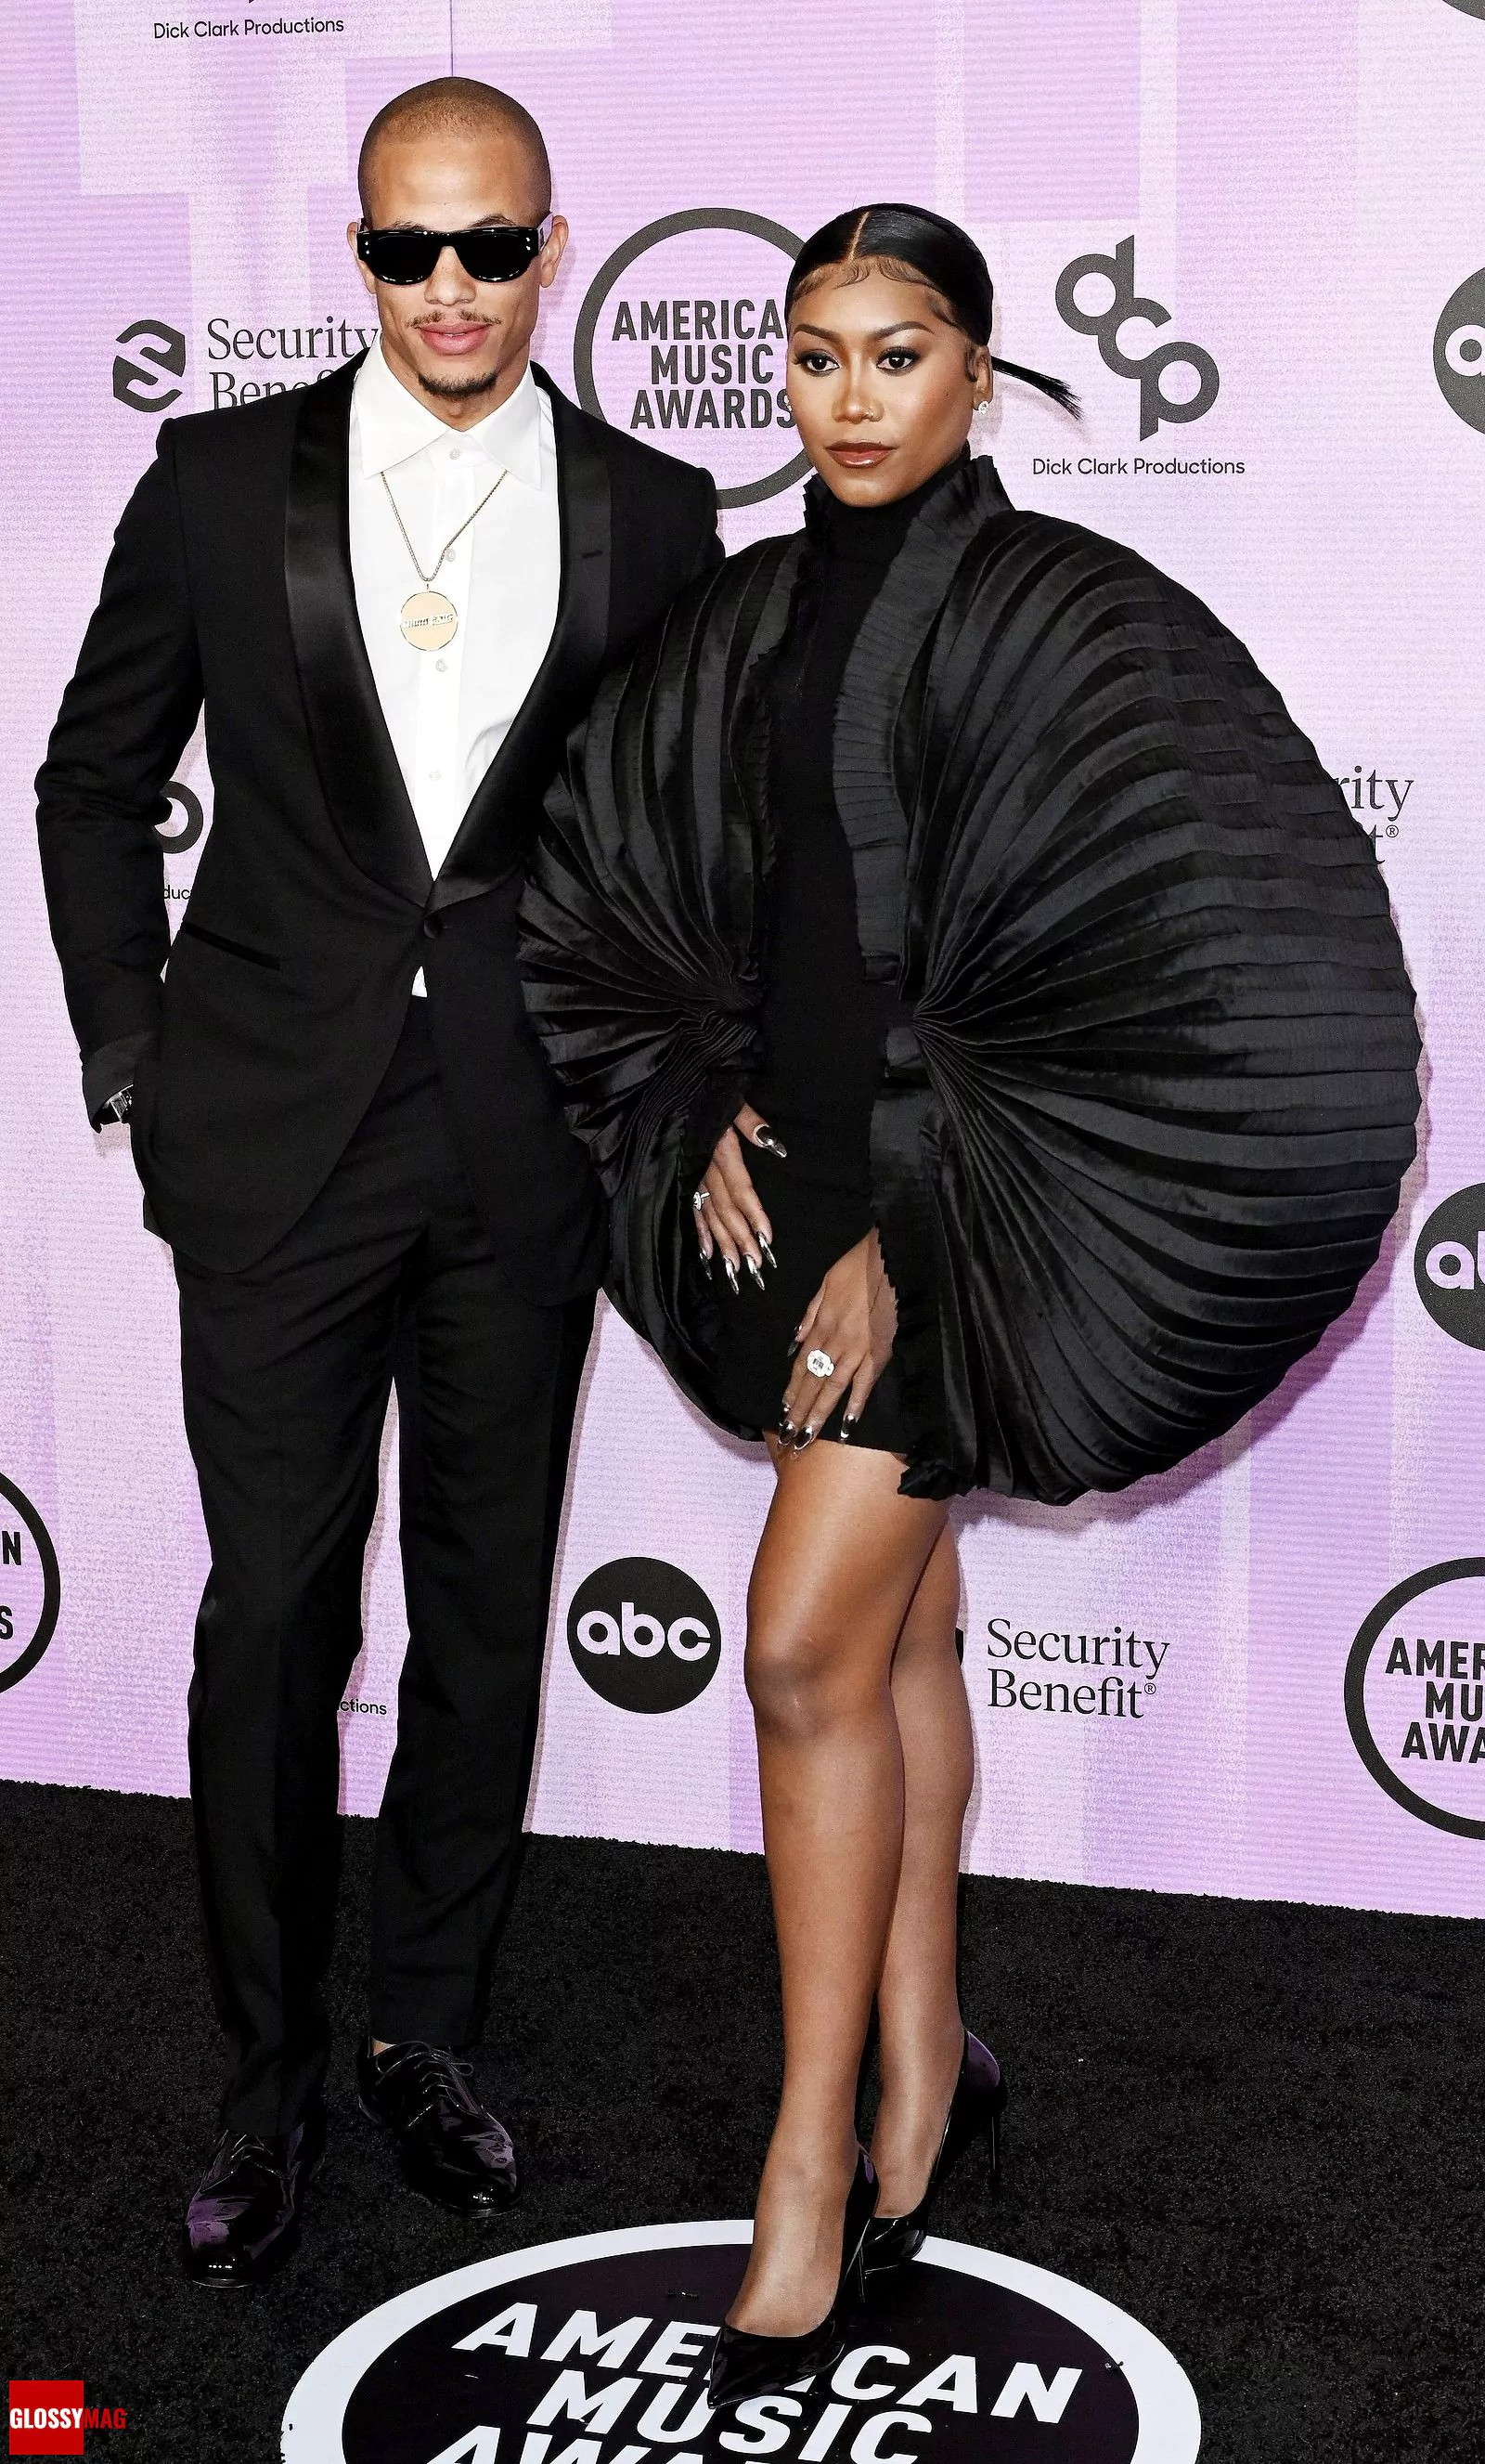 Рэйсин Хайрстон и Муни Лонг на церемонии вручения премии American Music Awards 2022 в Лос-Анджелесе, 20 ноября 2022 г.